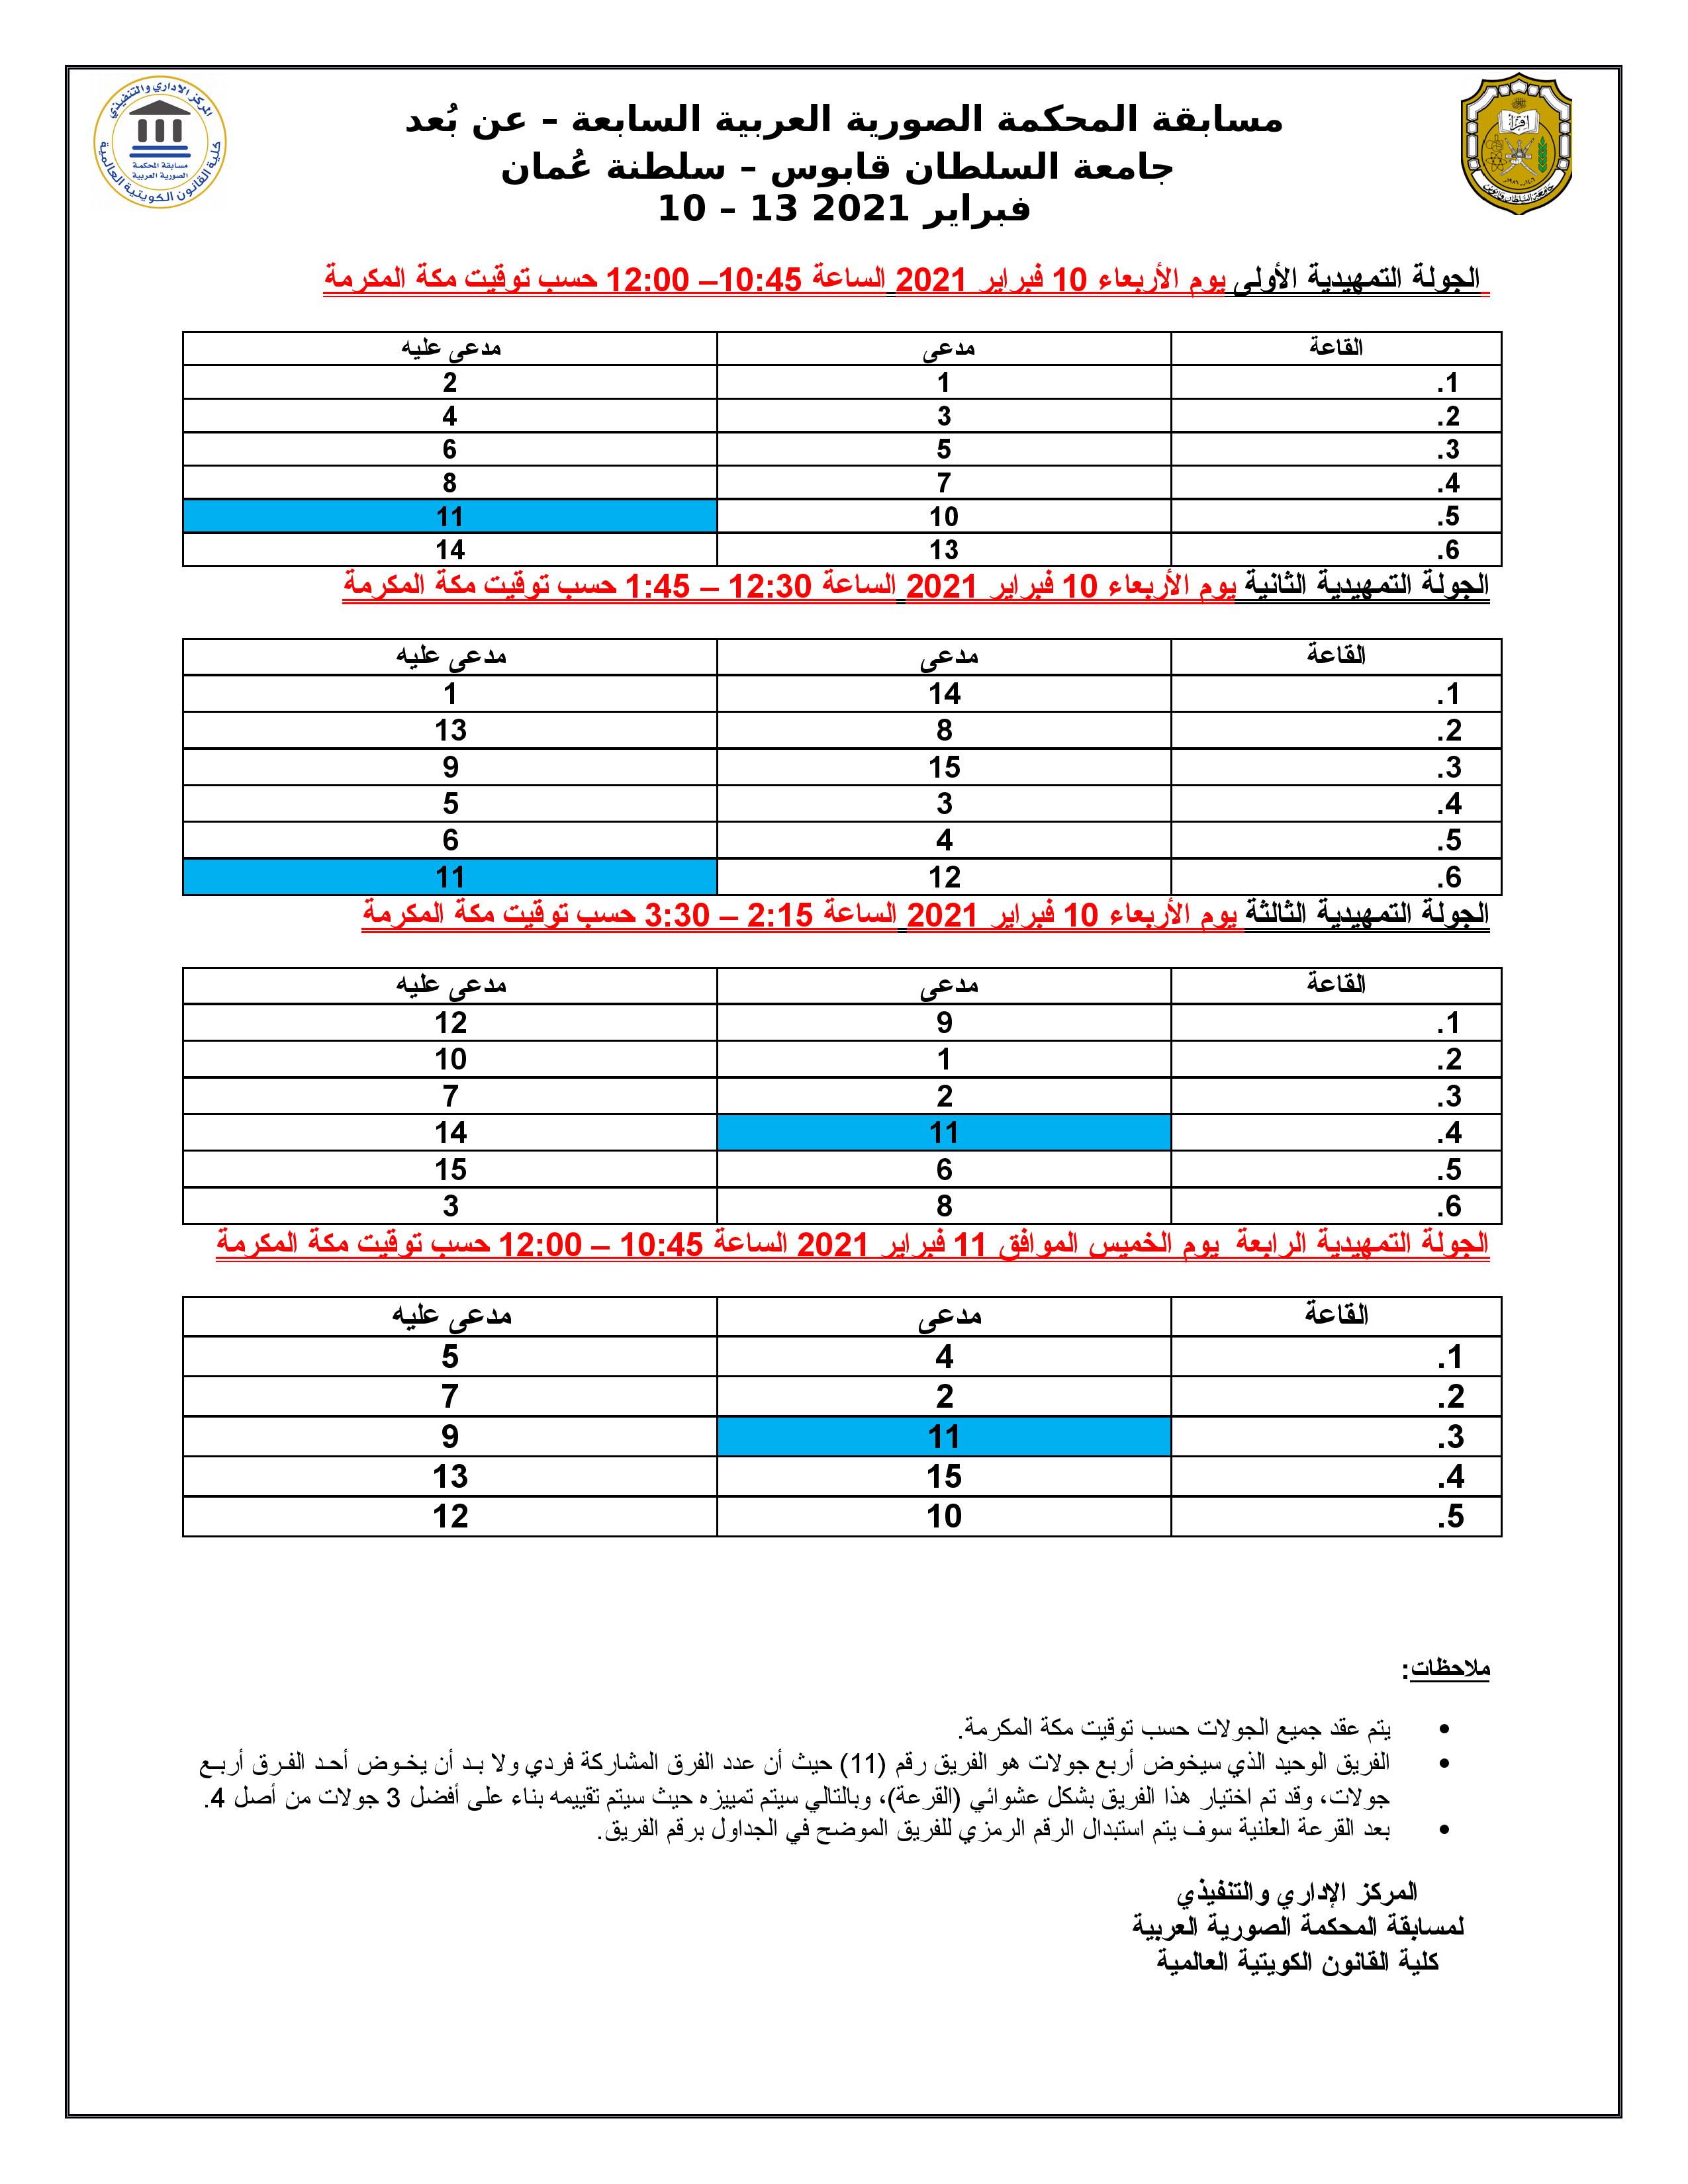 جدول الجولات التمهيدية - مسابقة المحكمة الصورية العربية السابعة - عن بعد 2021-page-001